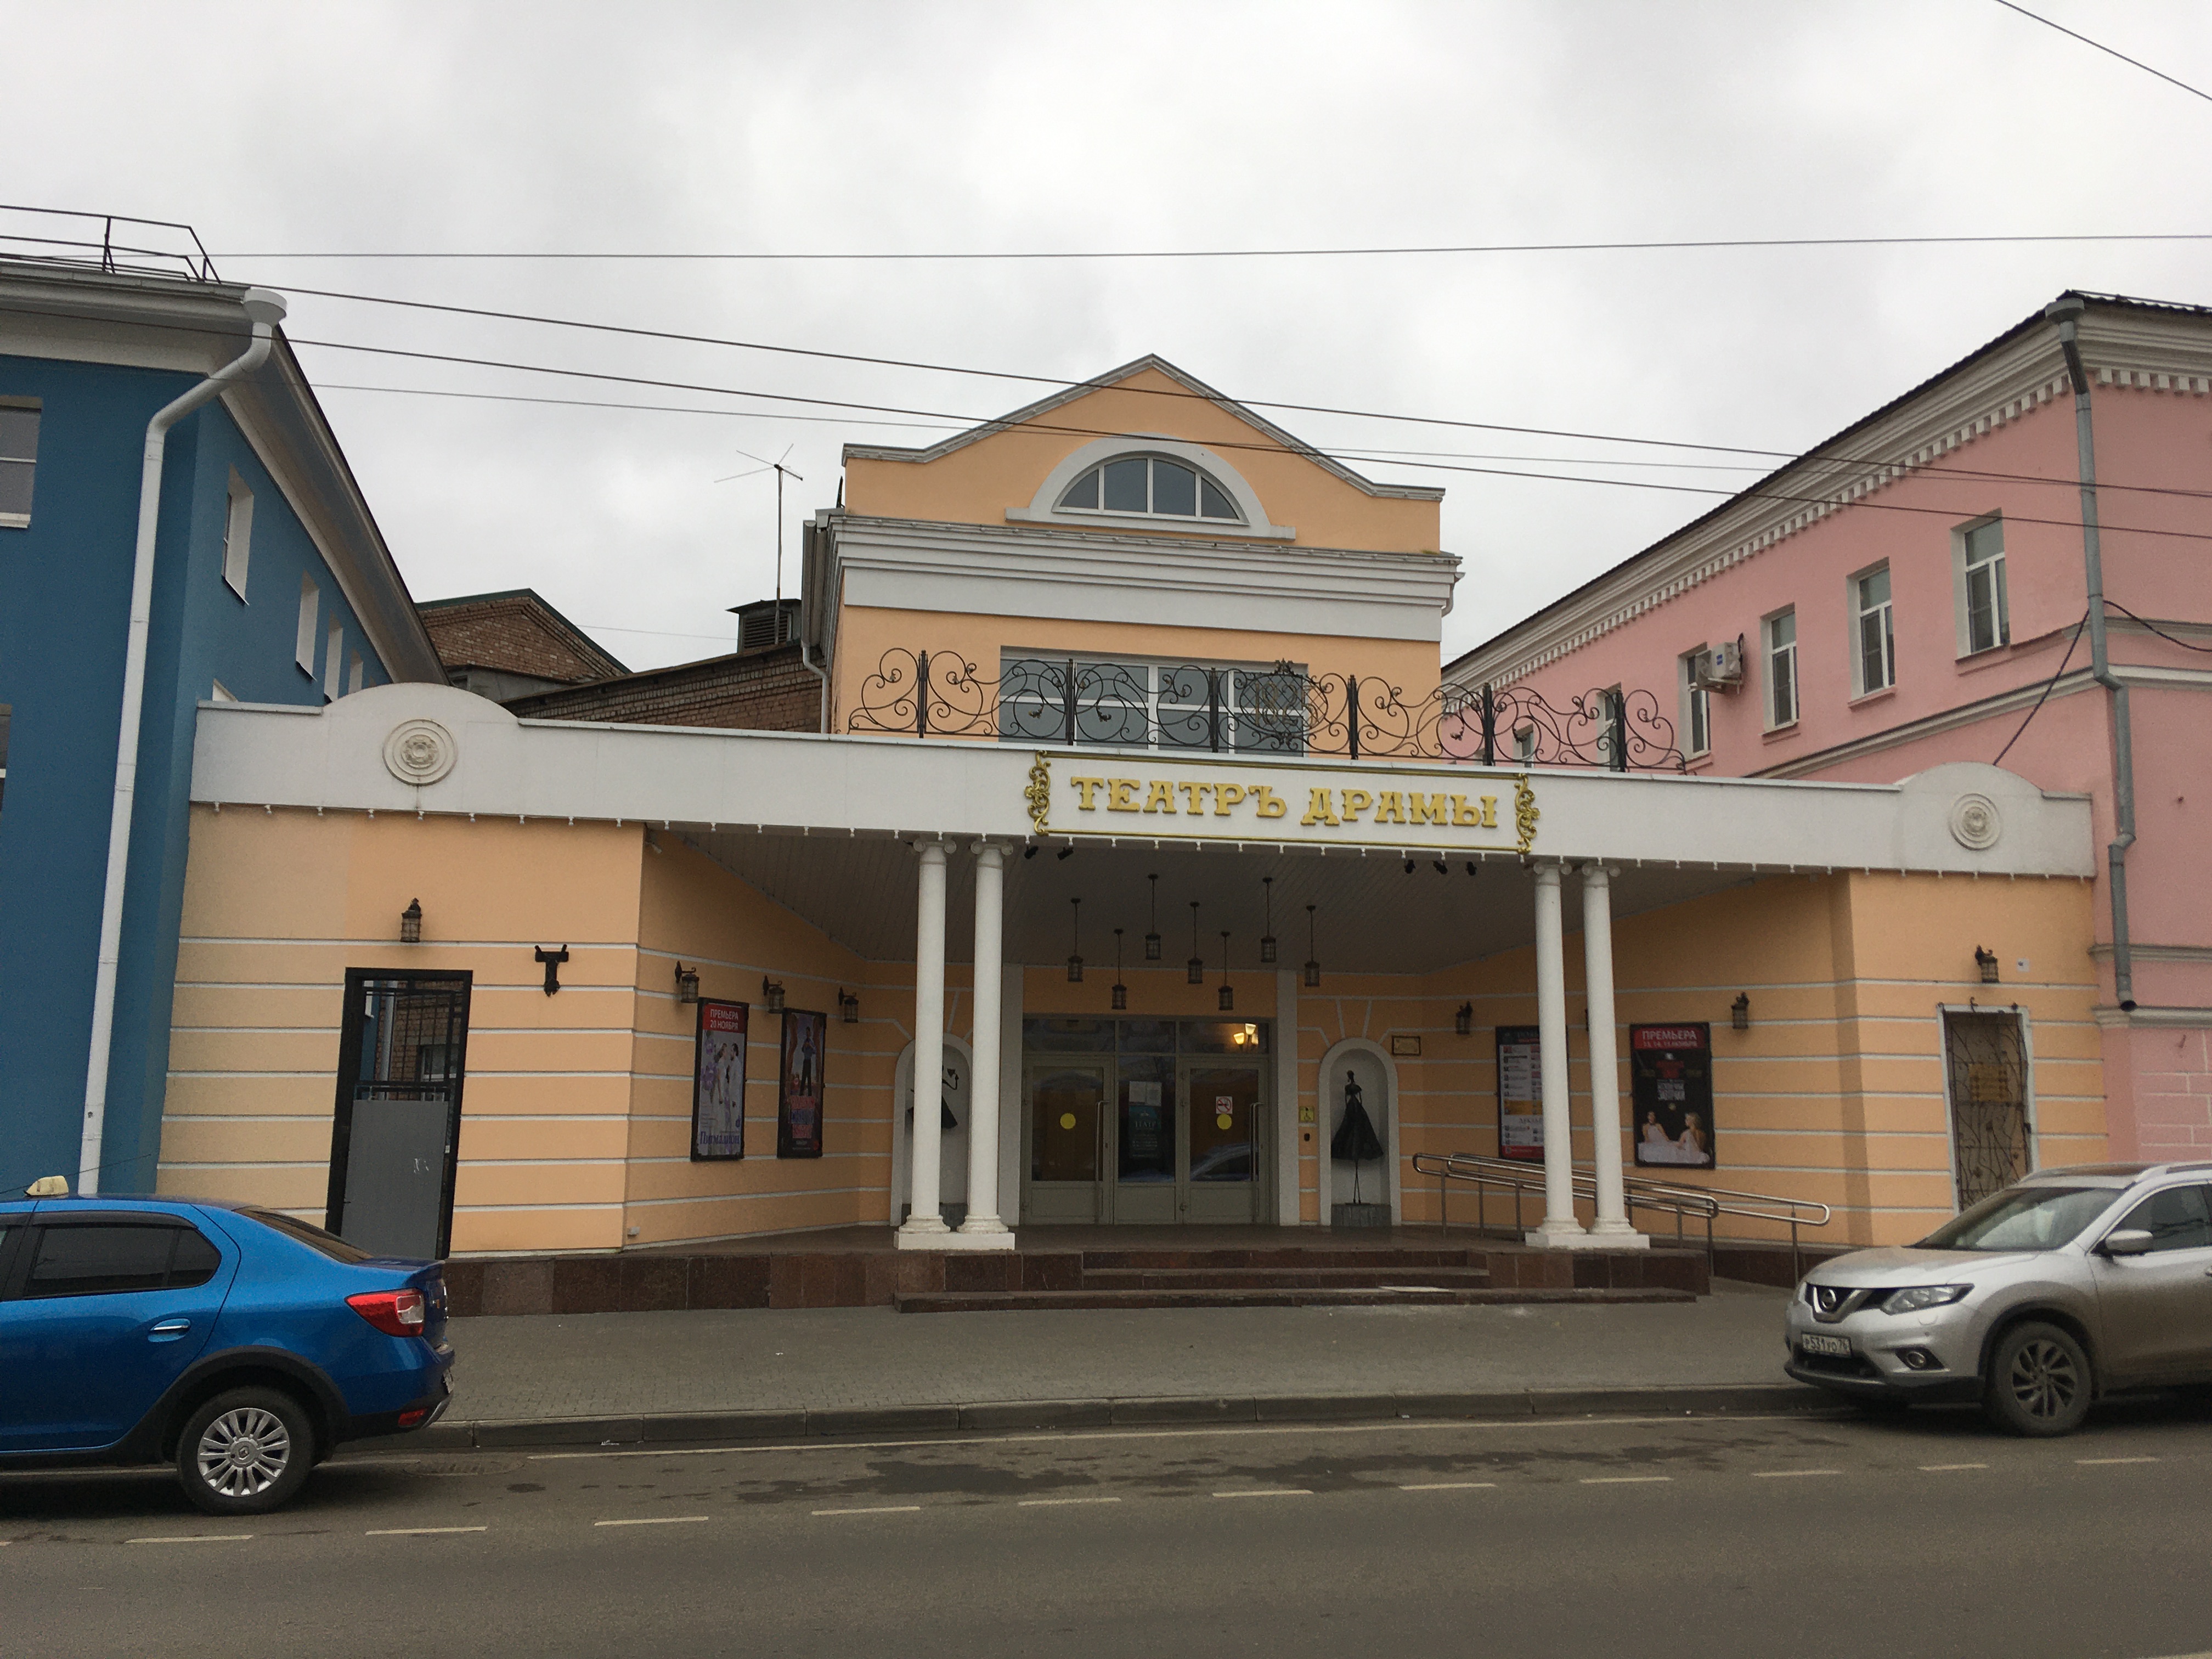 Рыбинский театр купить билет